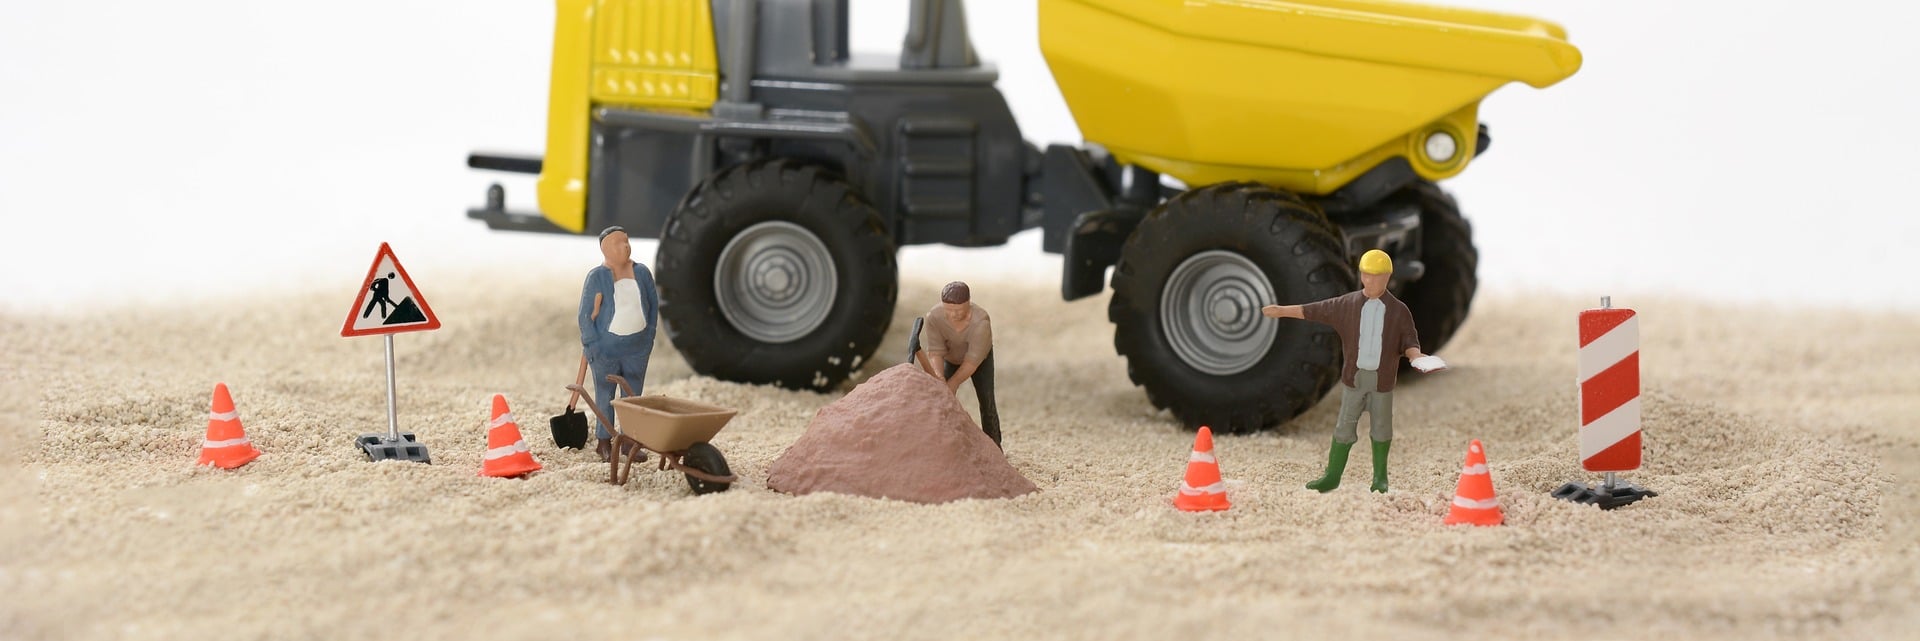 Bouwplaats gemaakt met poppetjes: bouwvakkers met kruiwagen, zandbult, oranje pionnen en verkeersborden voor een shovel. 